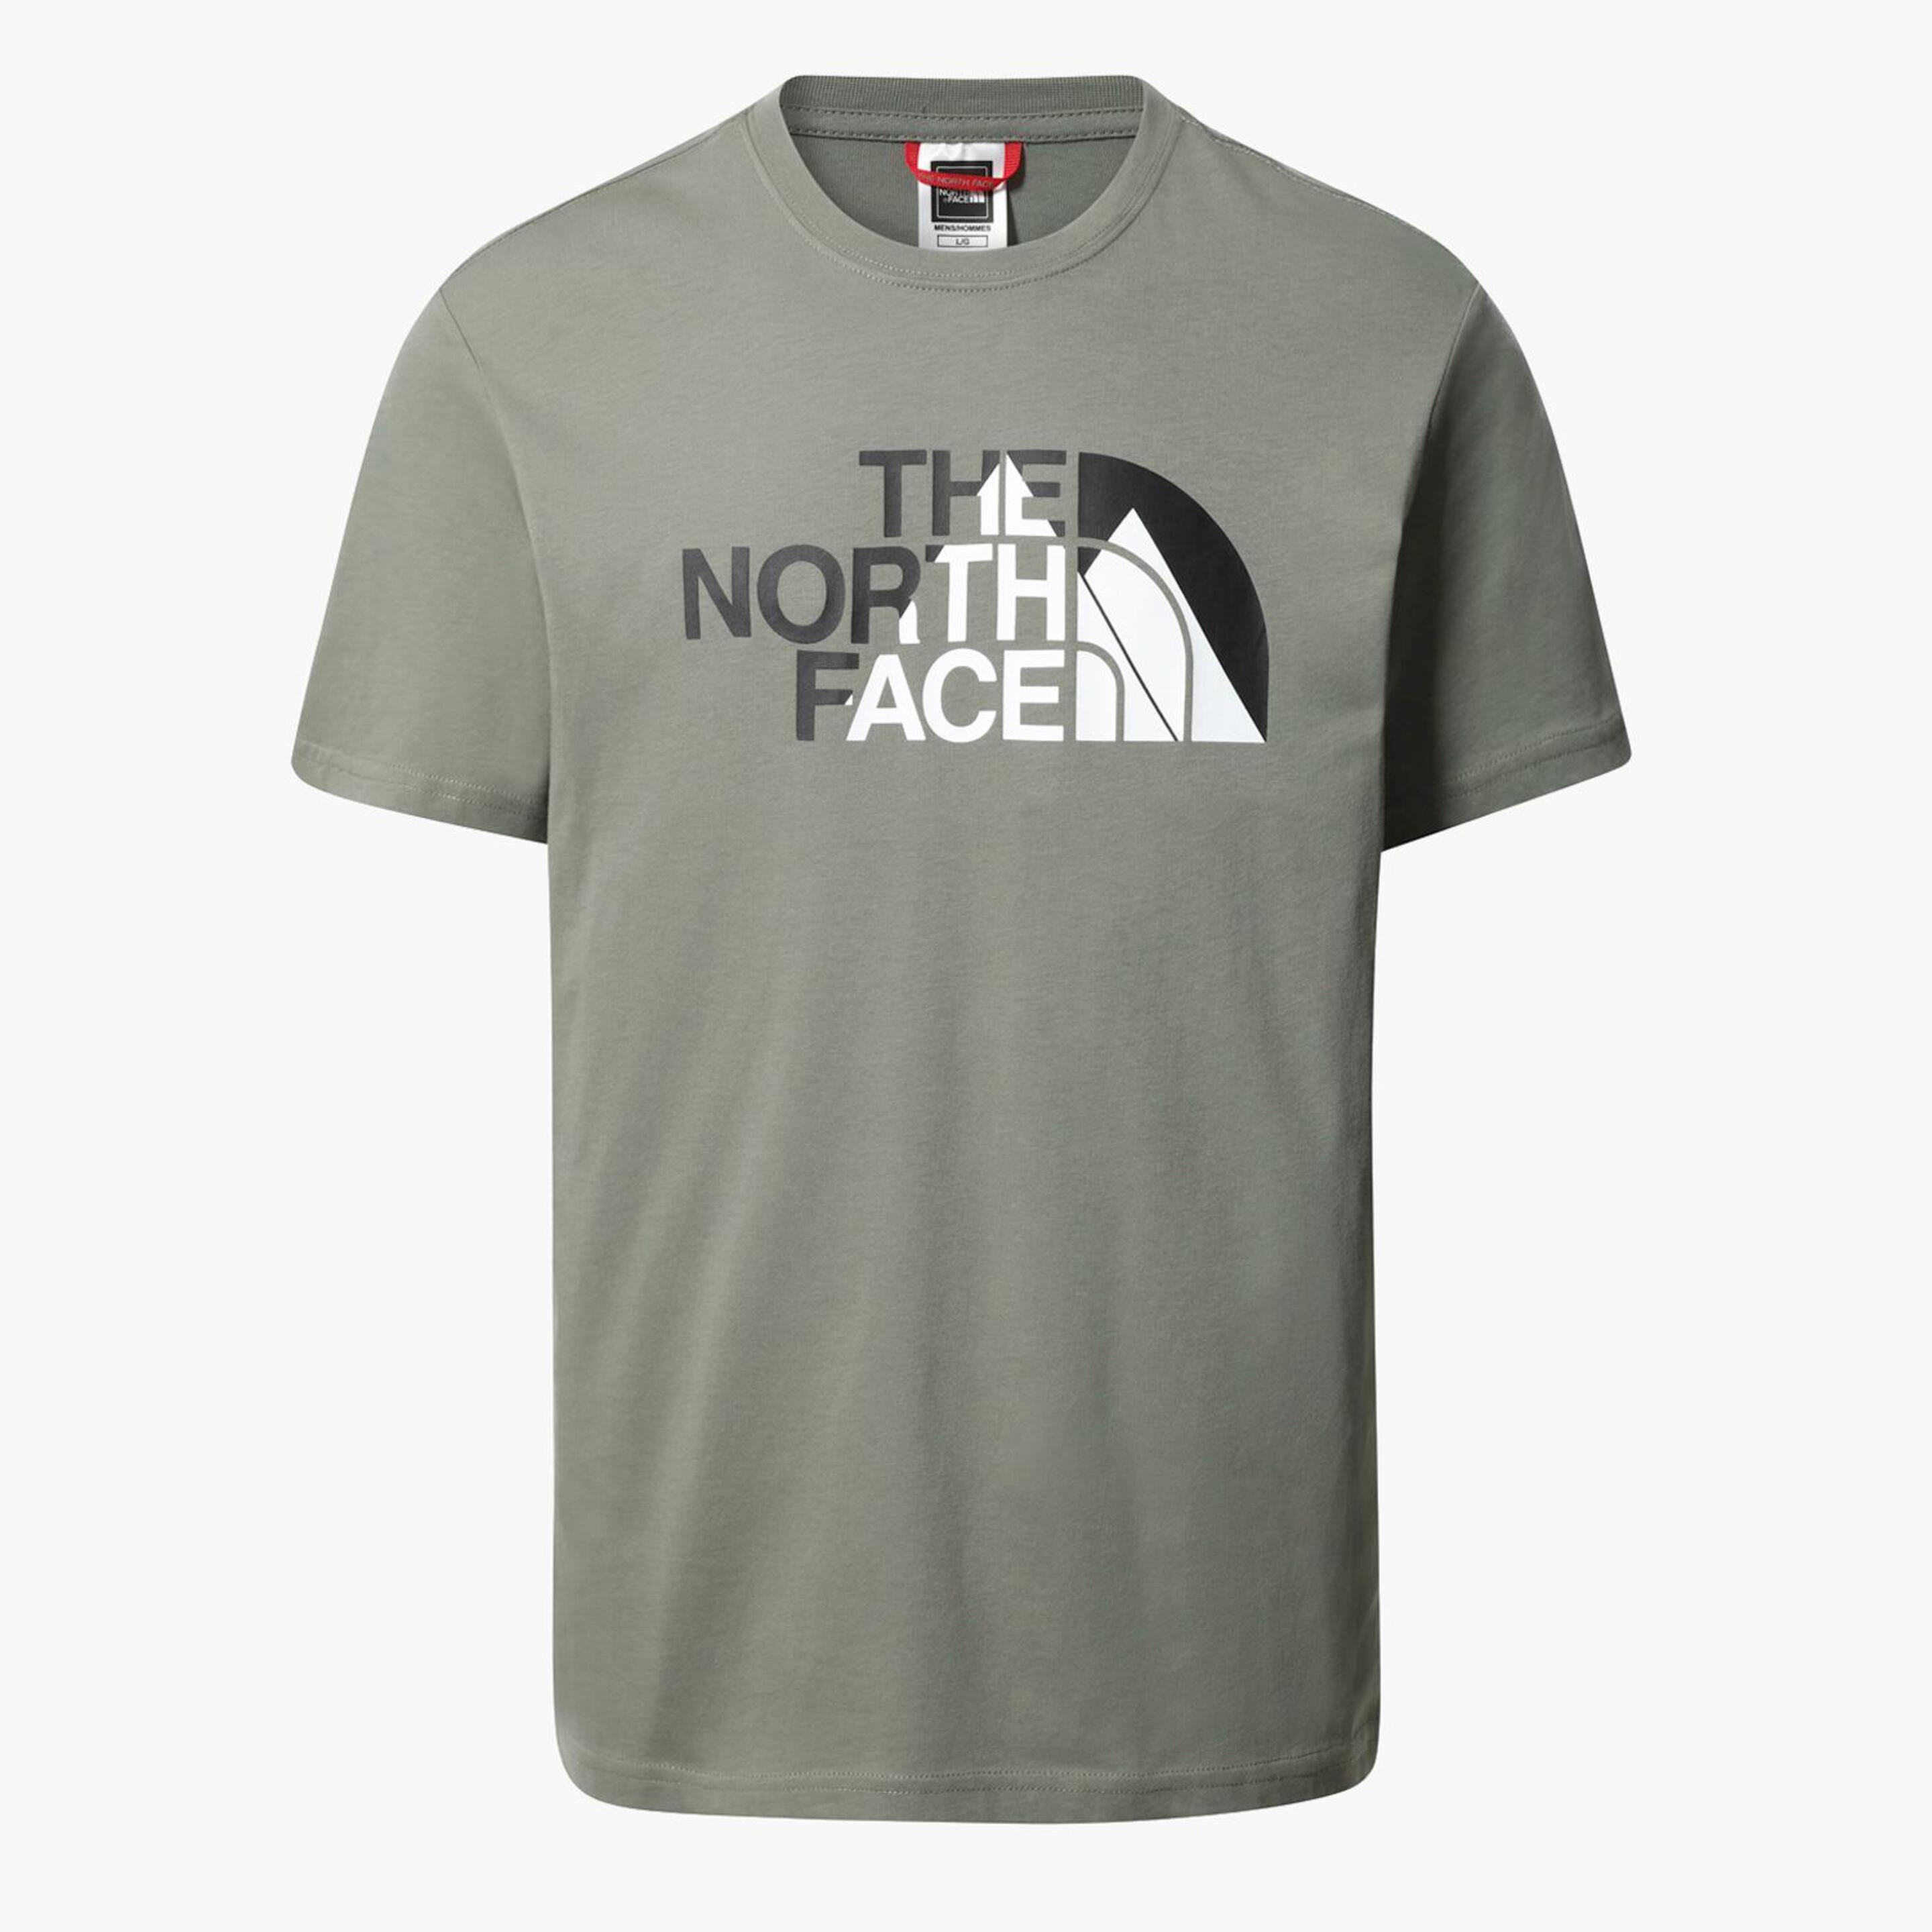 North Face Cro Camiseta M/c Montaña